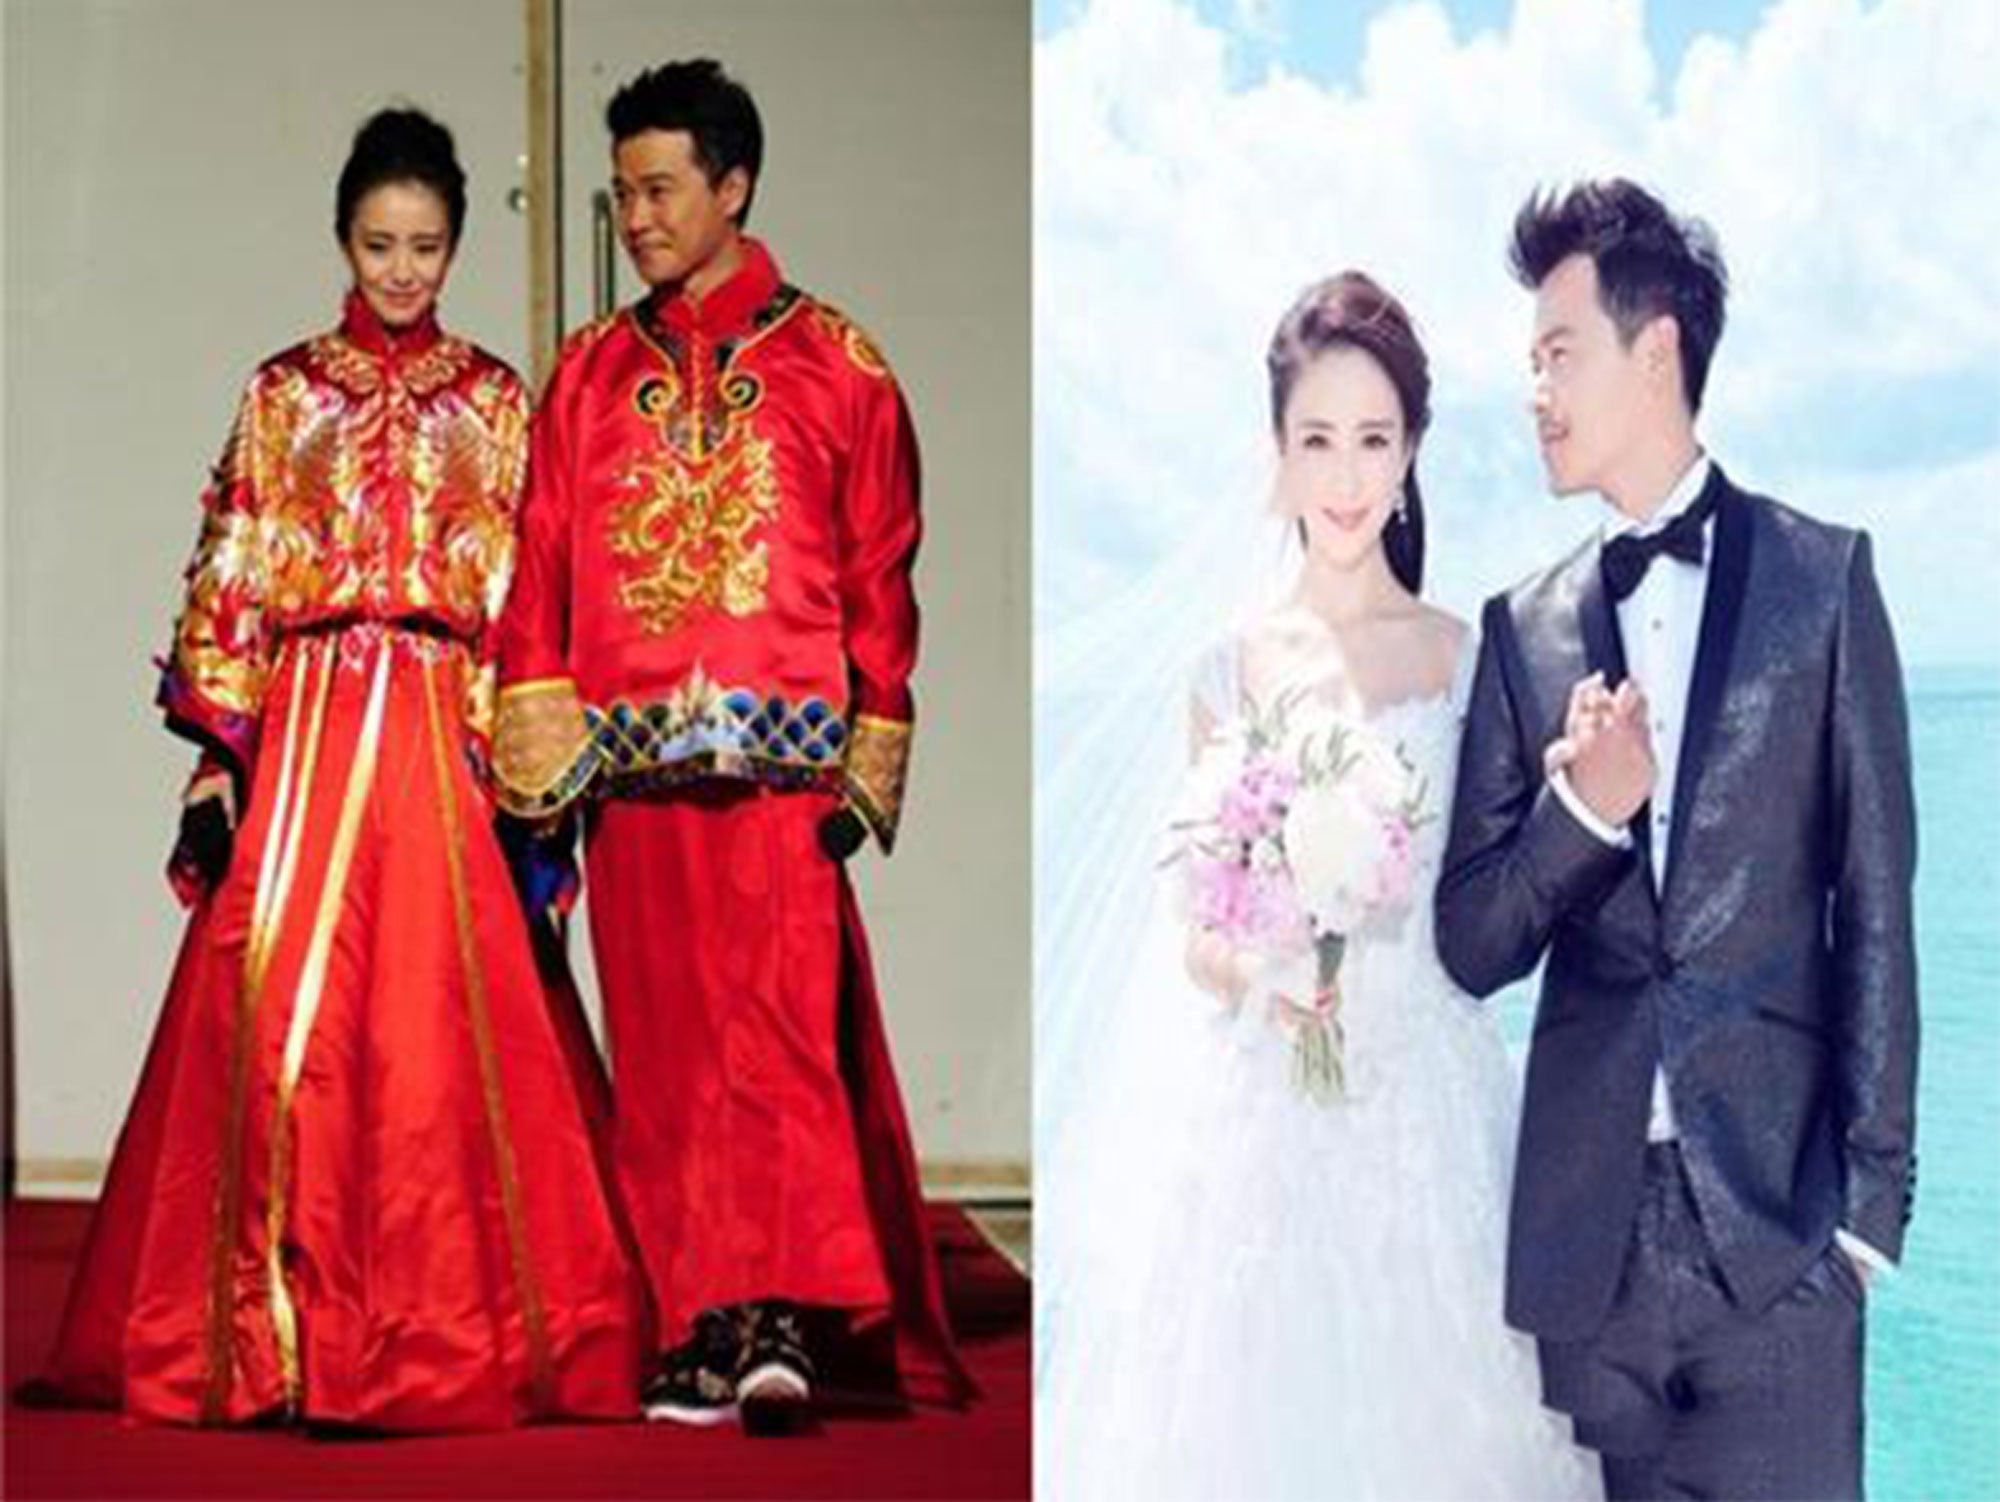 朱孝天中式婚纱照 明星中式婚纱照哪家最美?